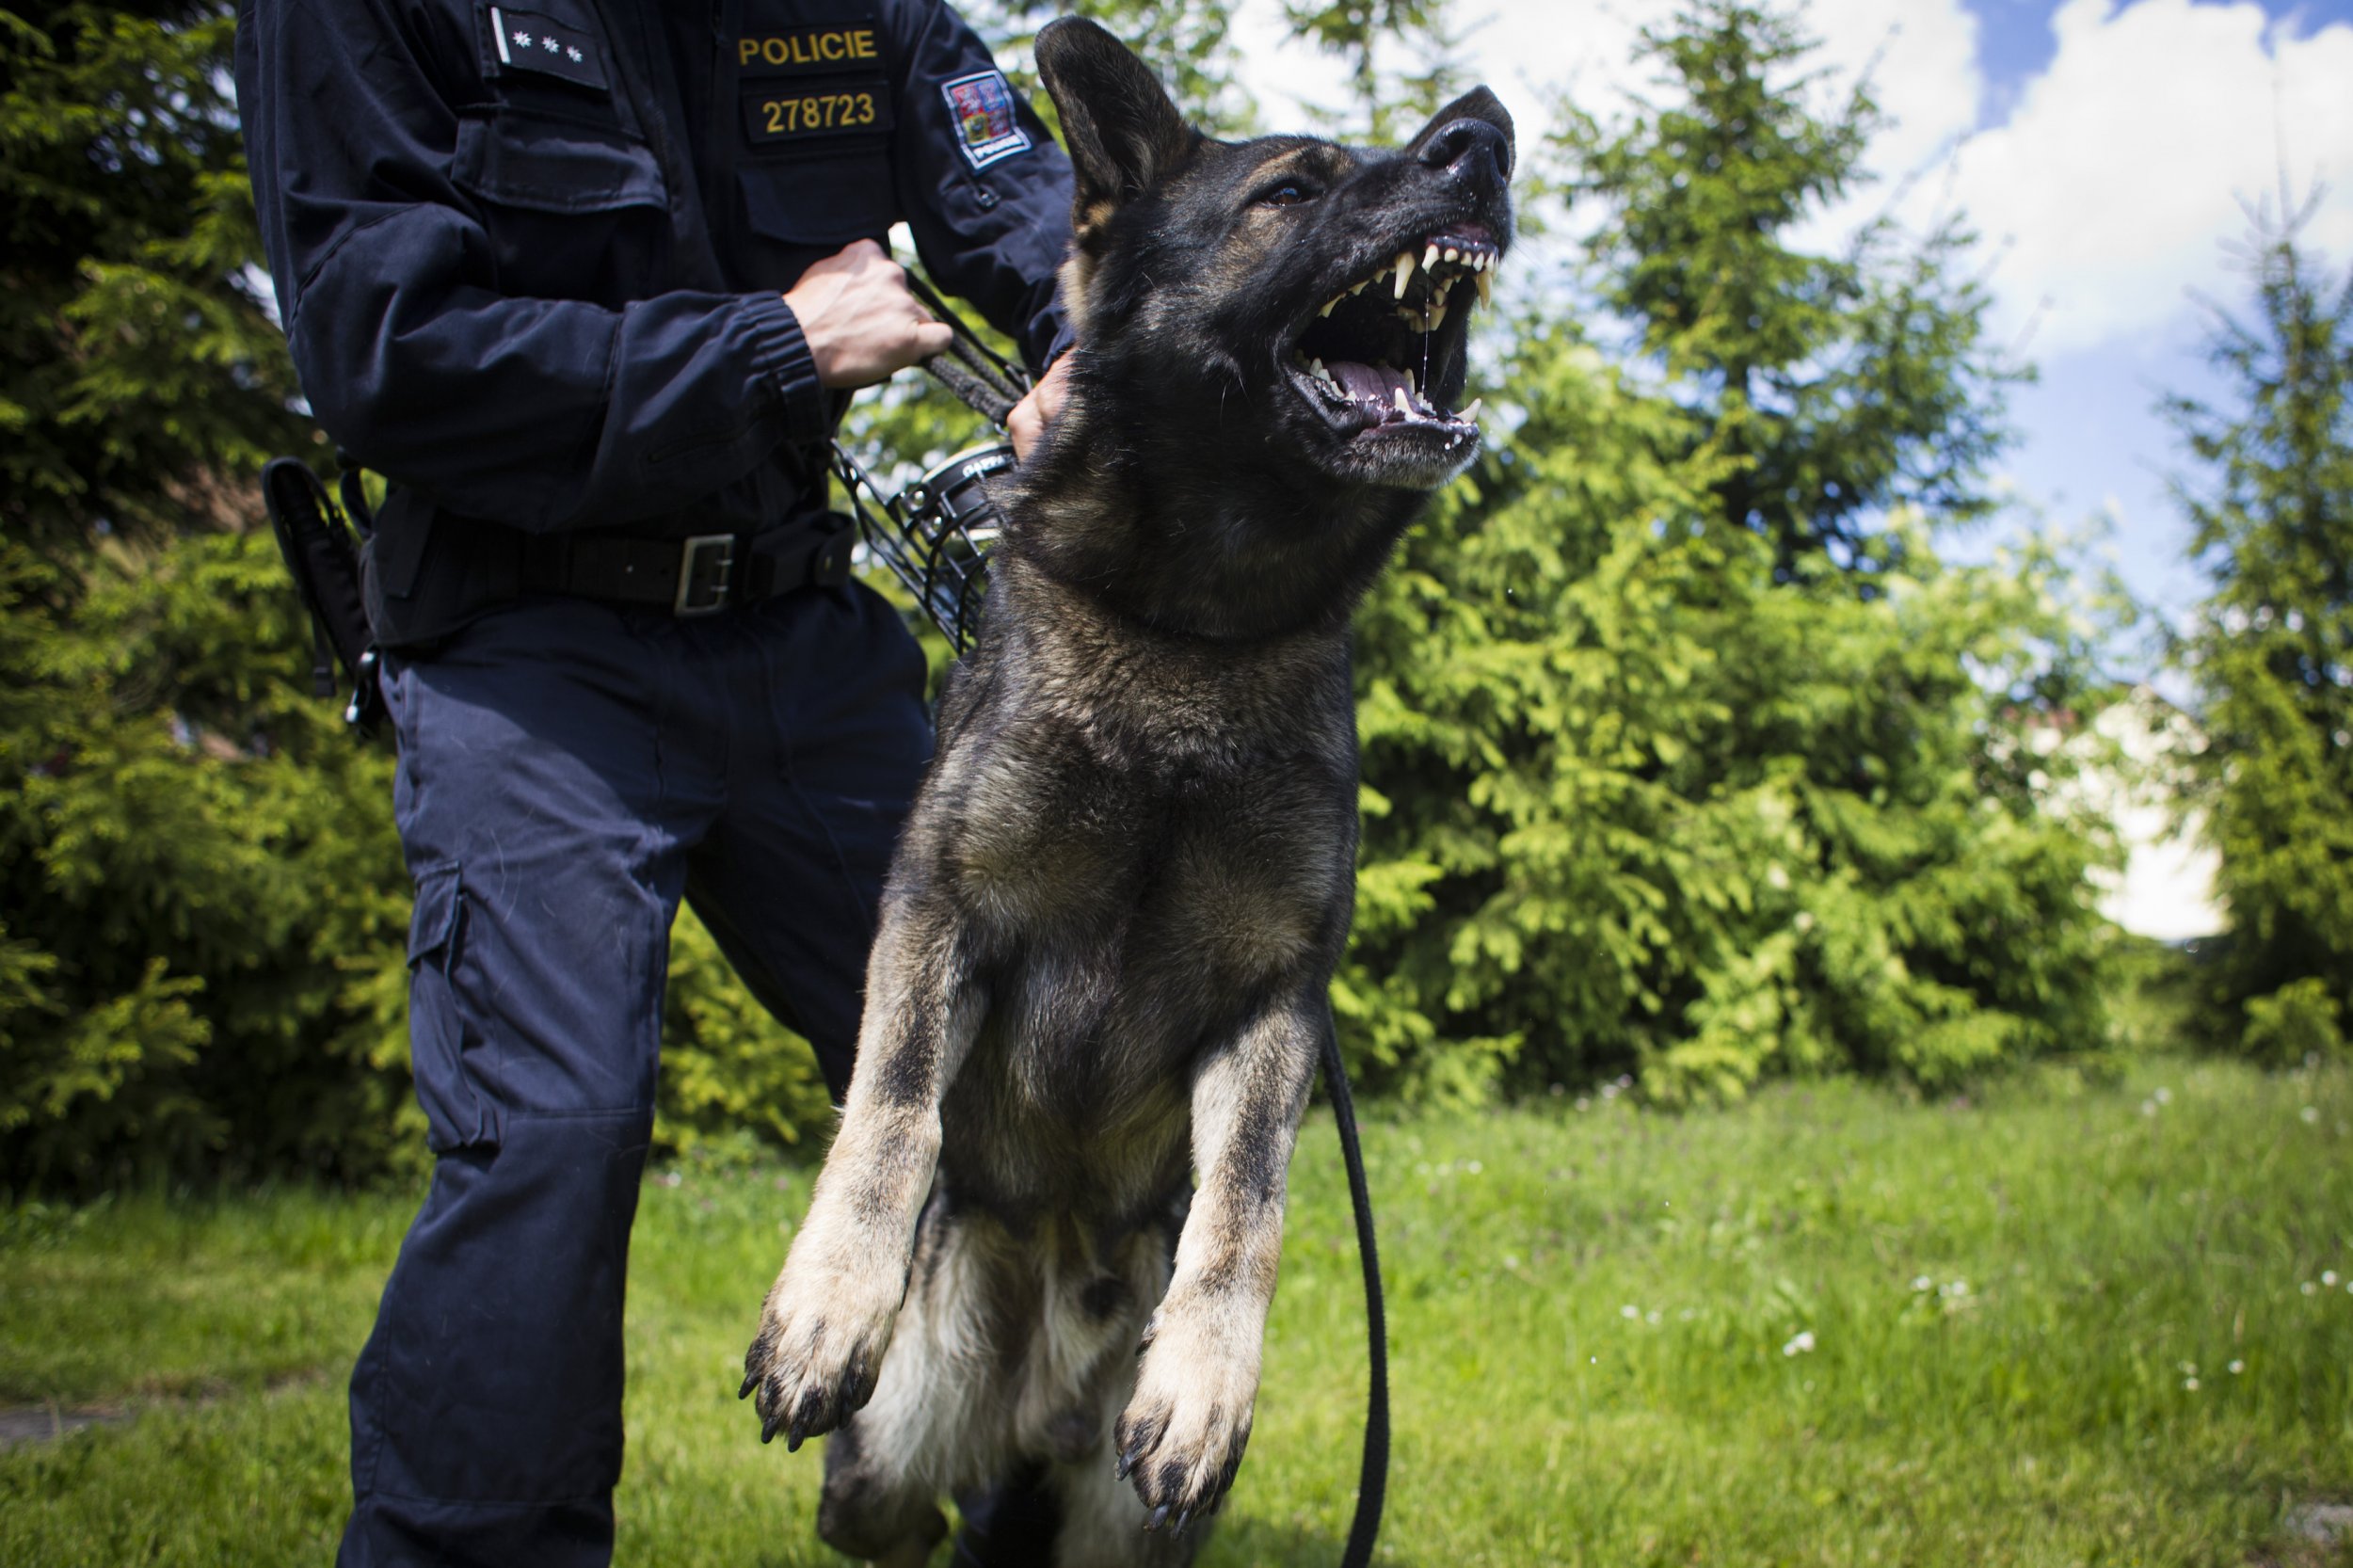 shepherd police dog